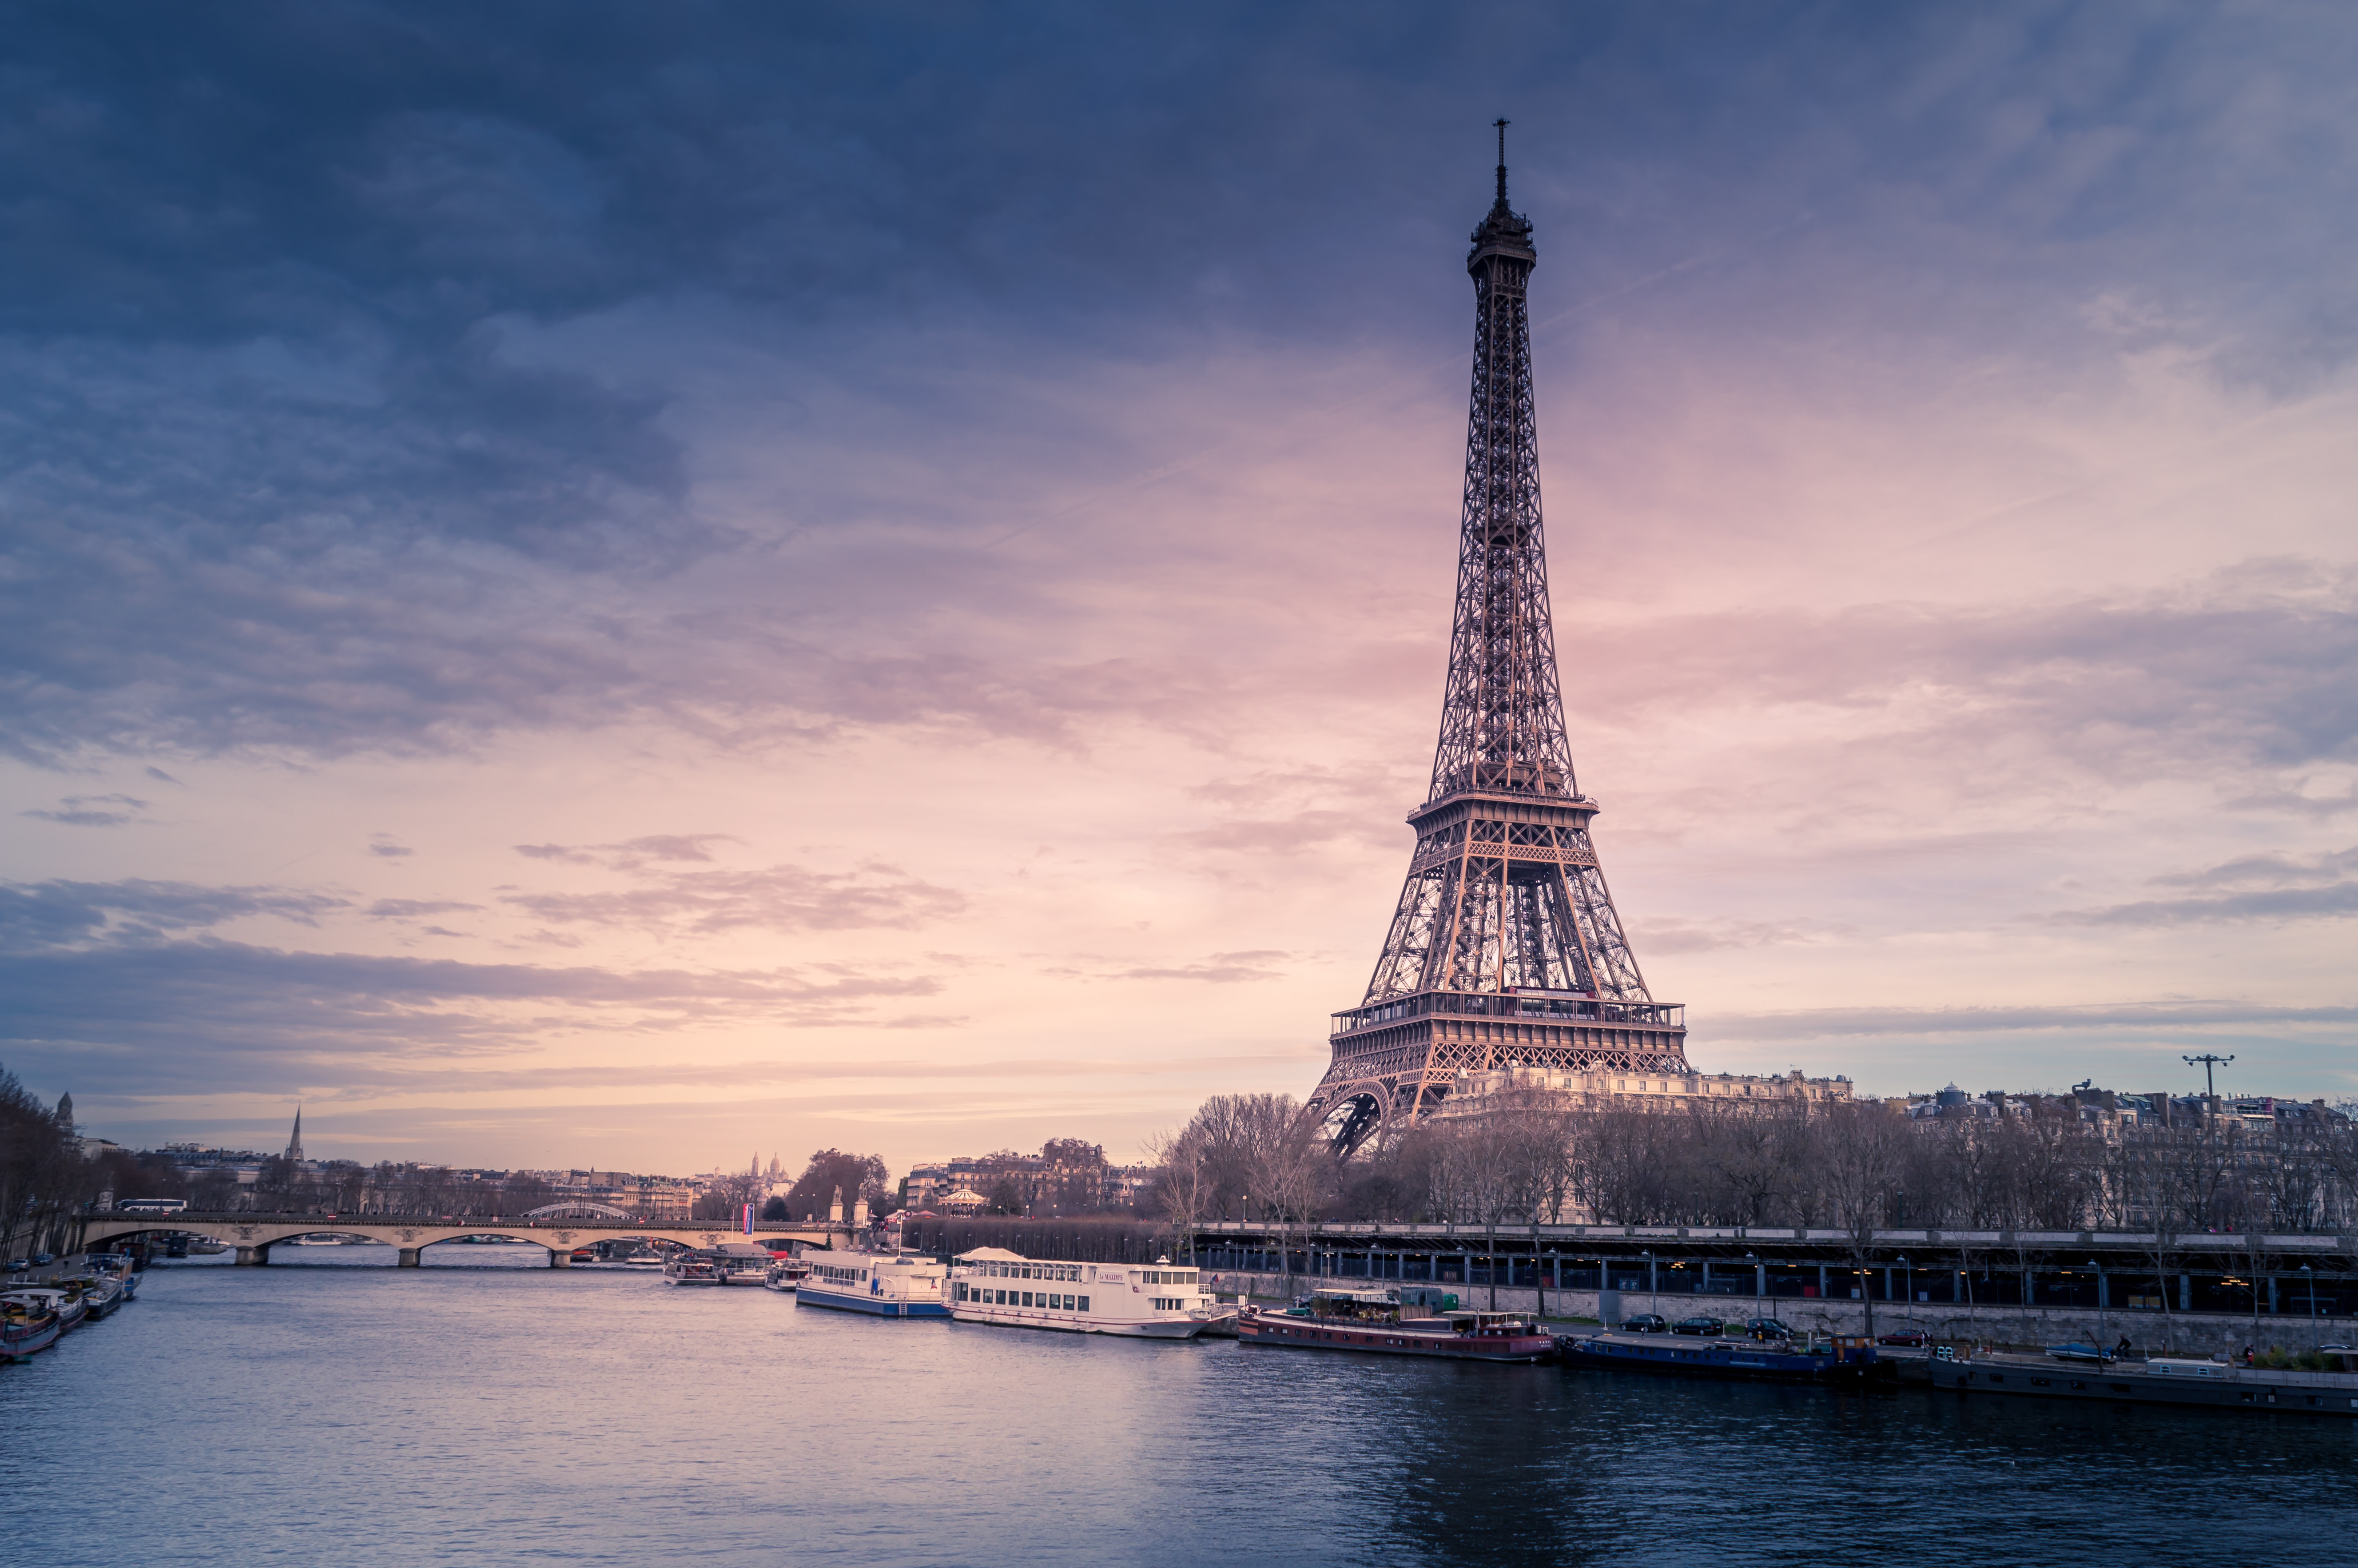 Eiffel Tower through seine river